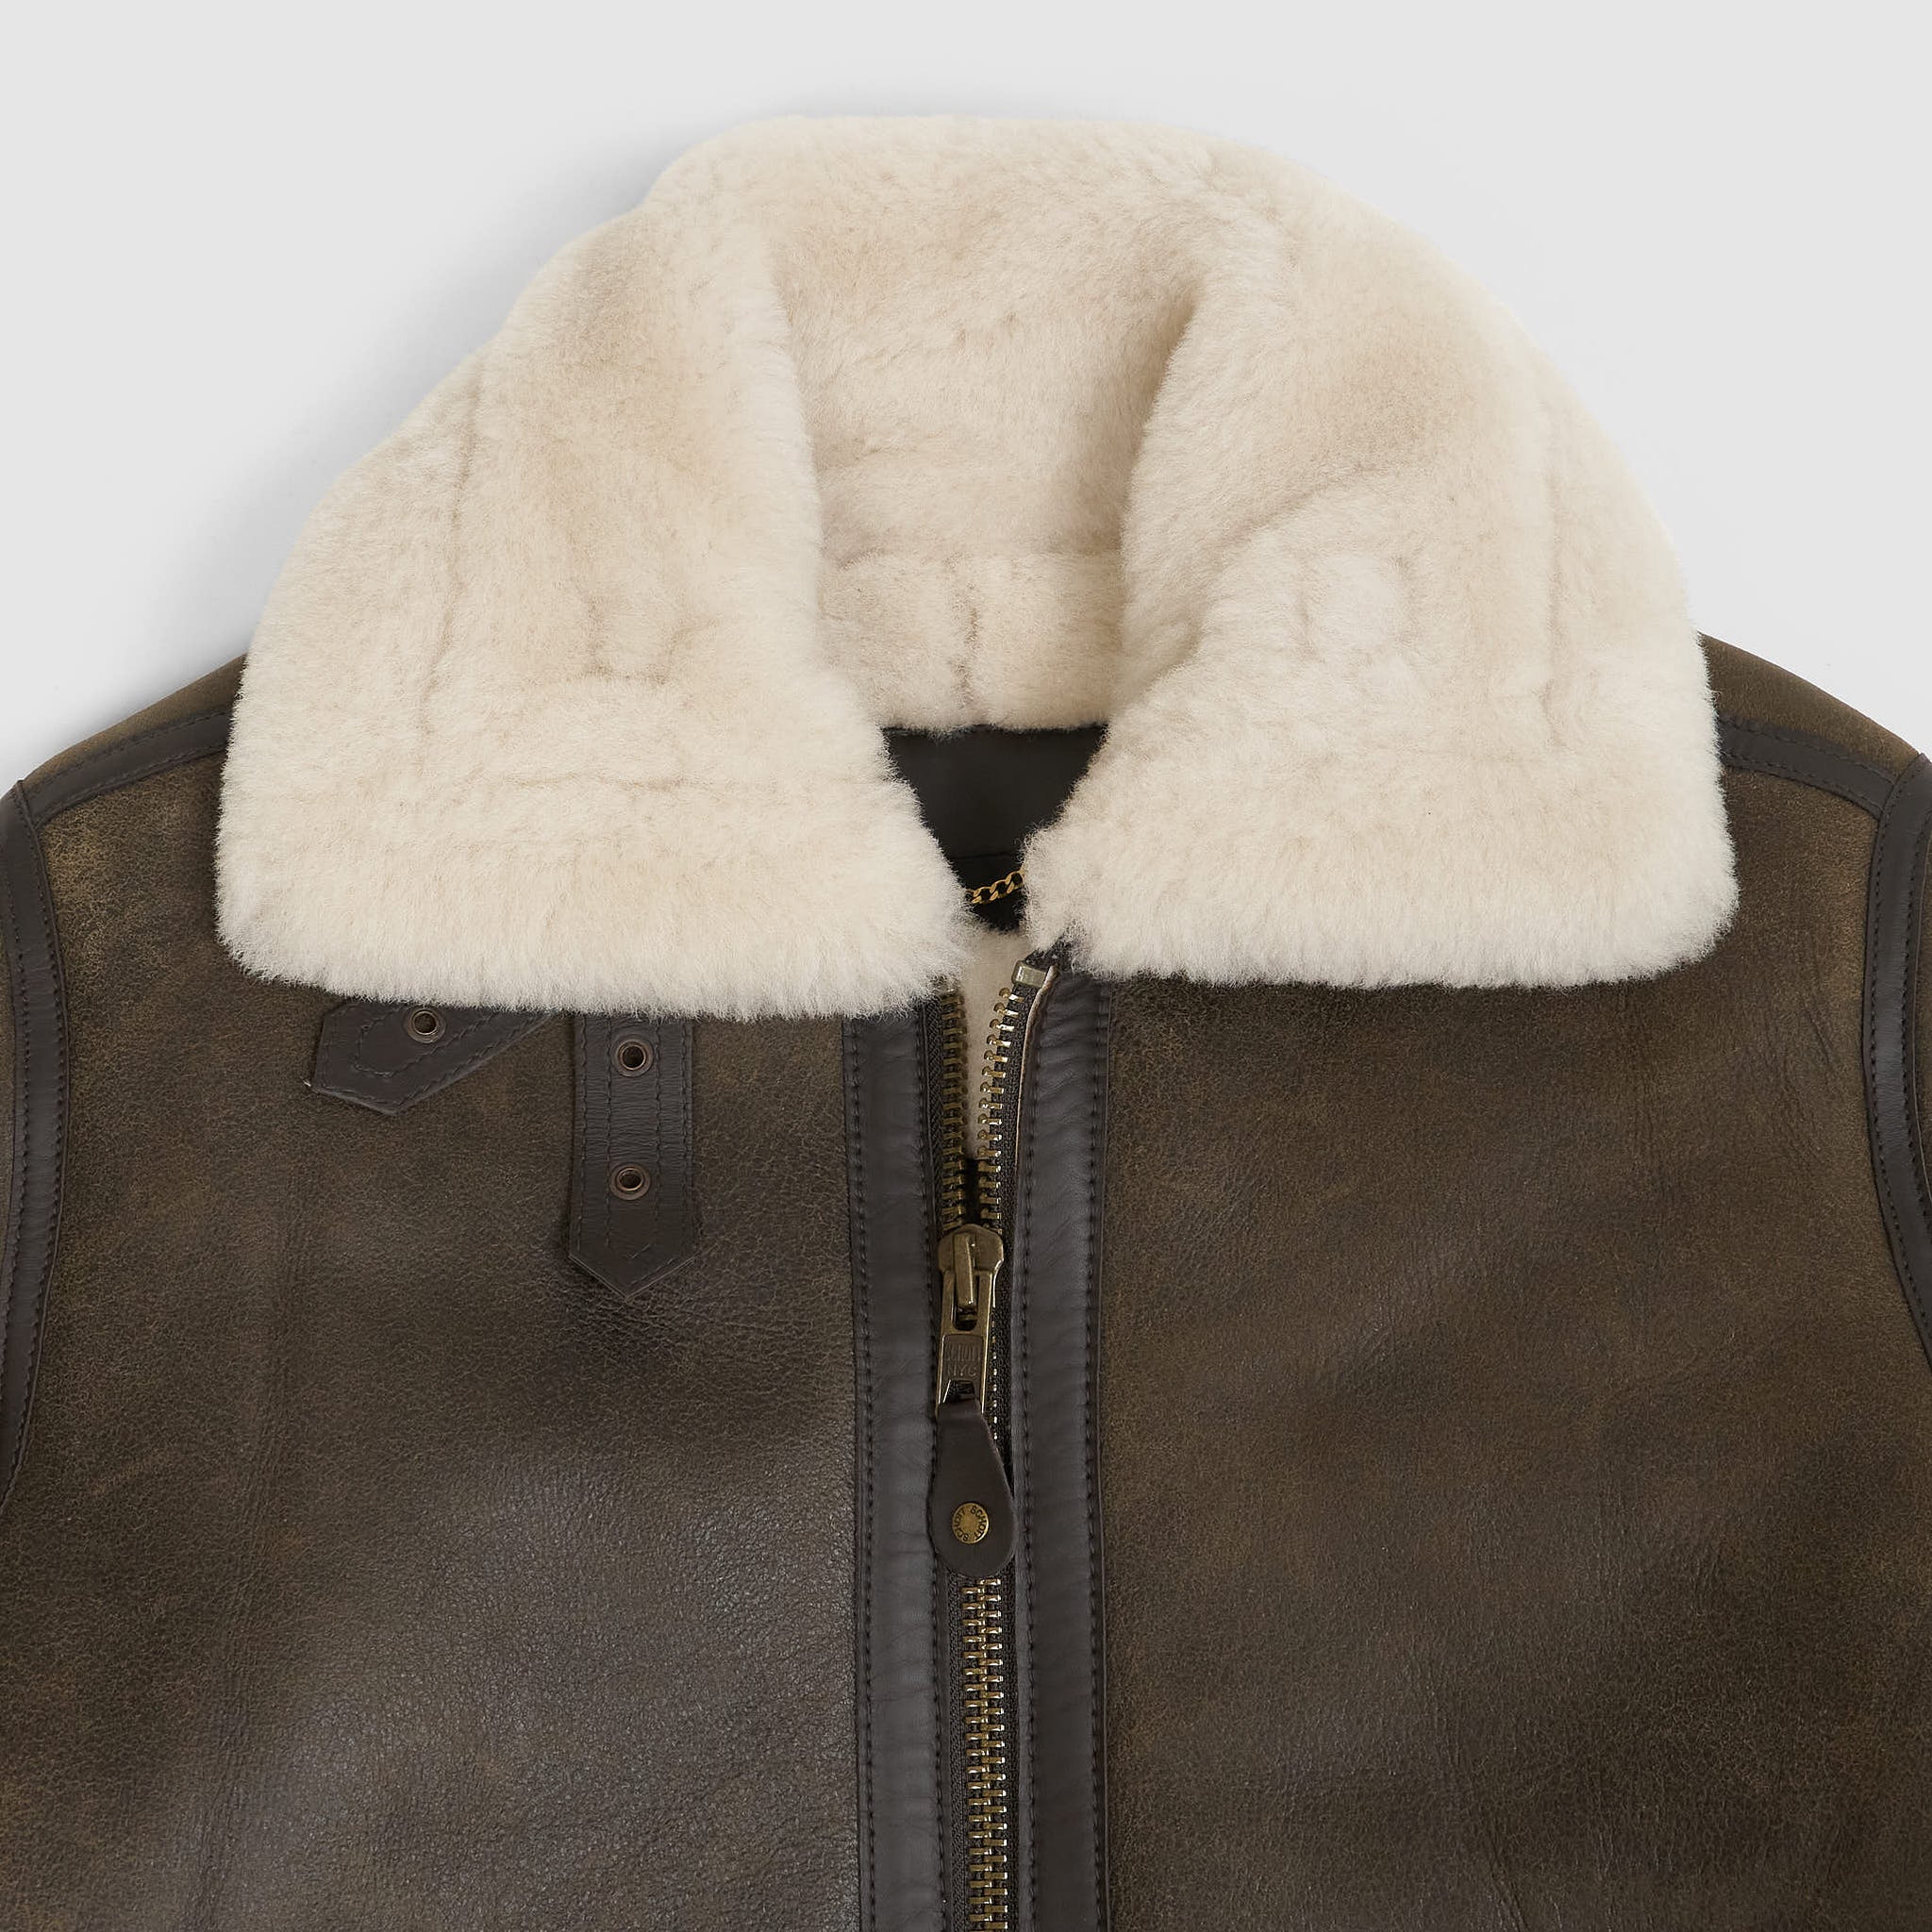 Schott N.Y.C. B-3 Leather Jacket - DeeCee style